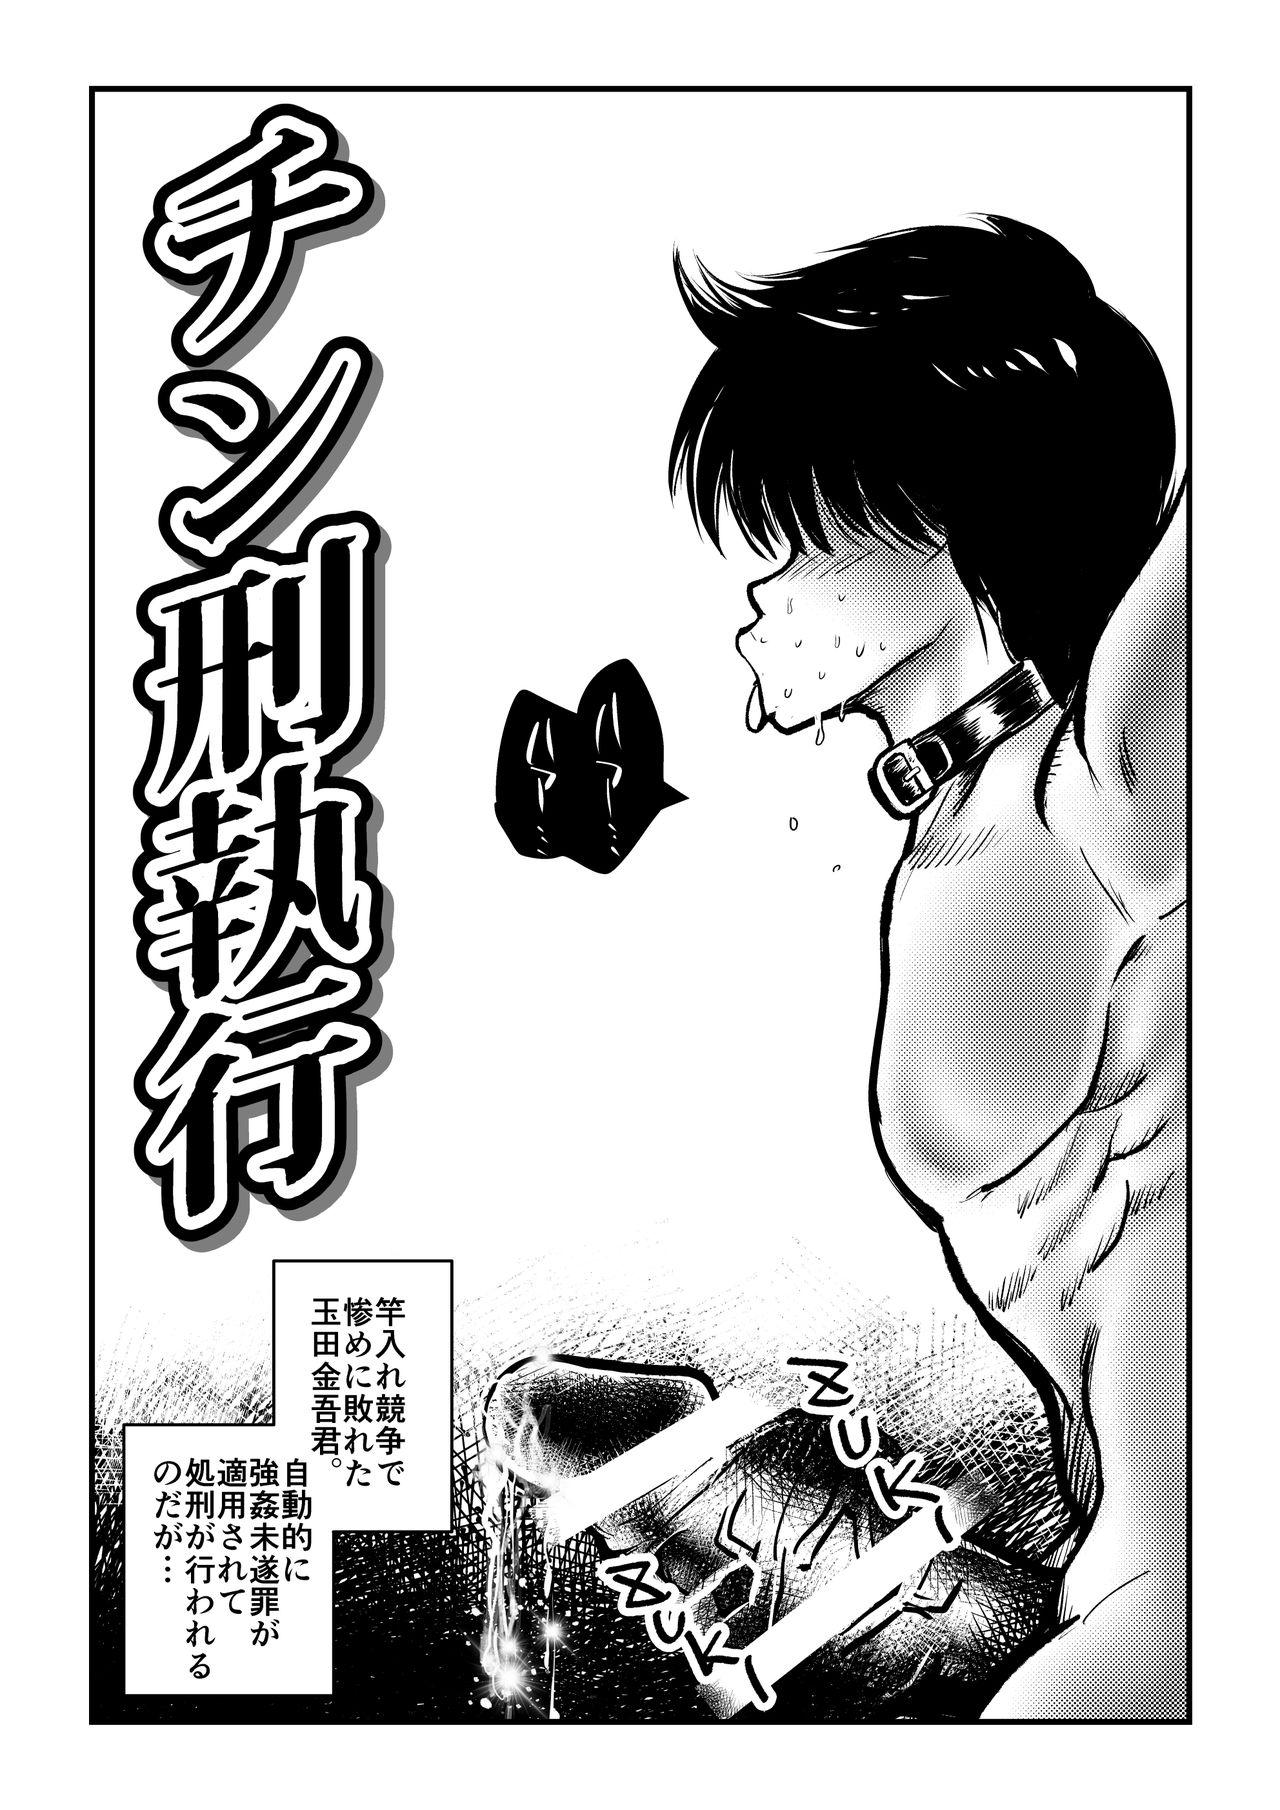 Rubdown Chinkei Shikkou Sperm - Page 1